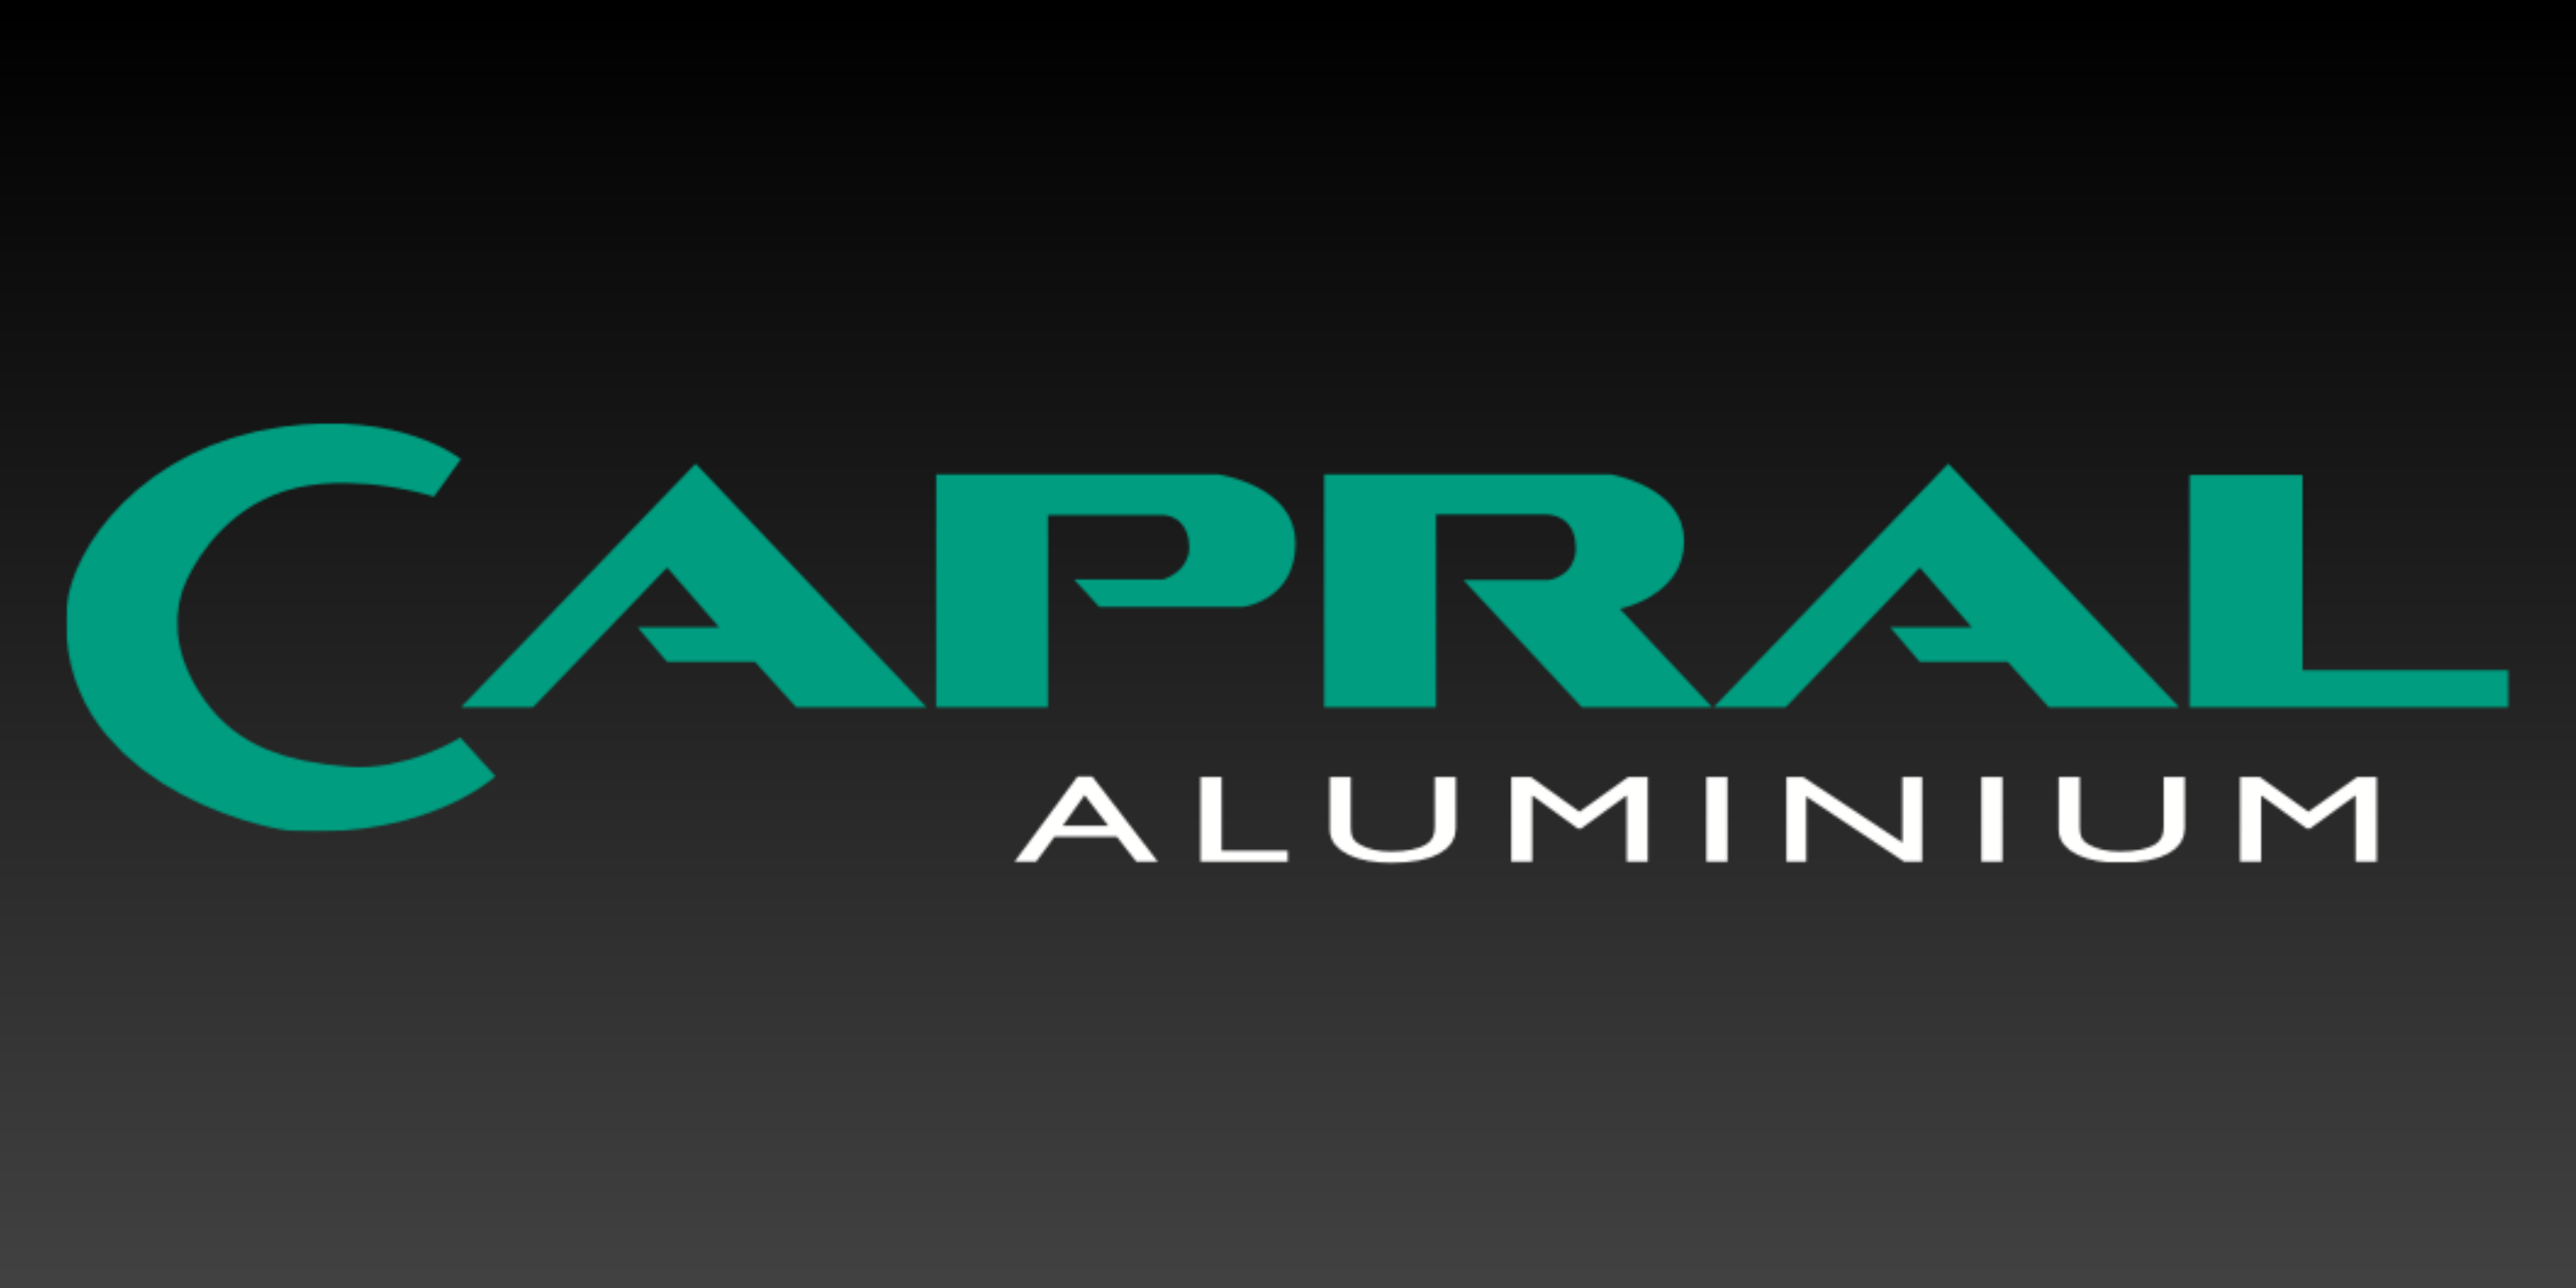 Capral Aluminium Logo